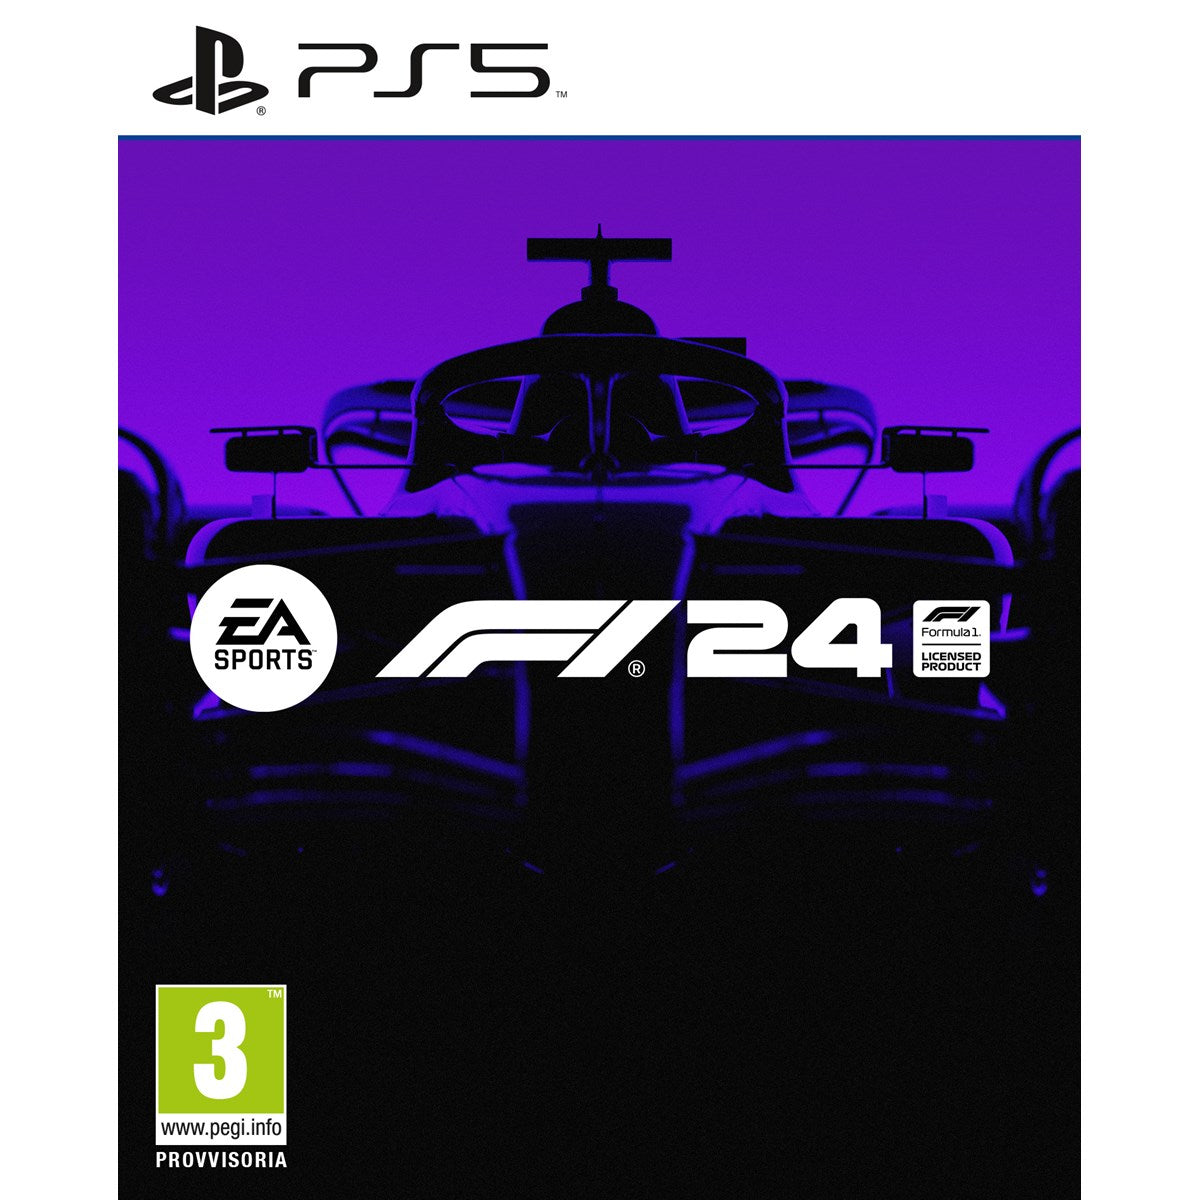 PS5 EA Sports F1 24 - Disponibilità immediata